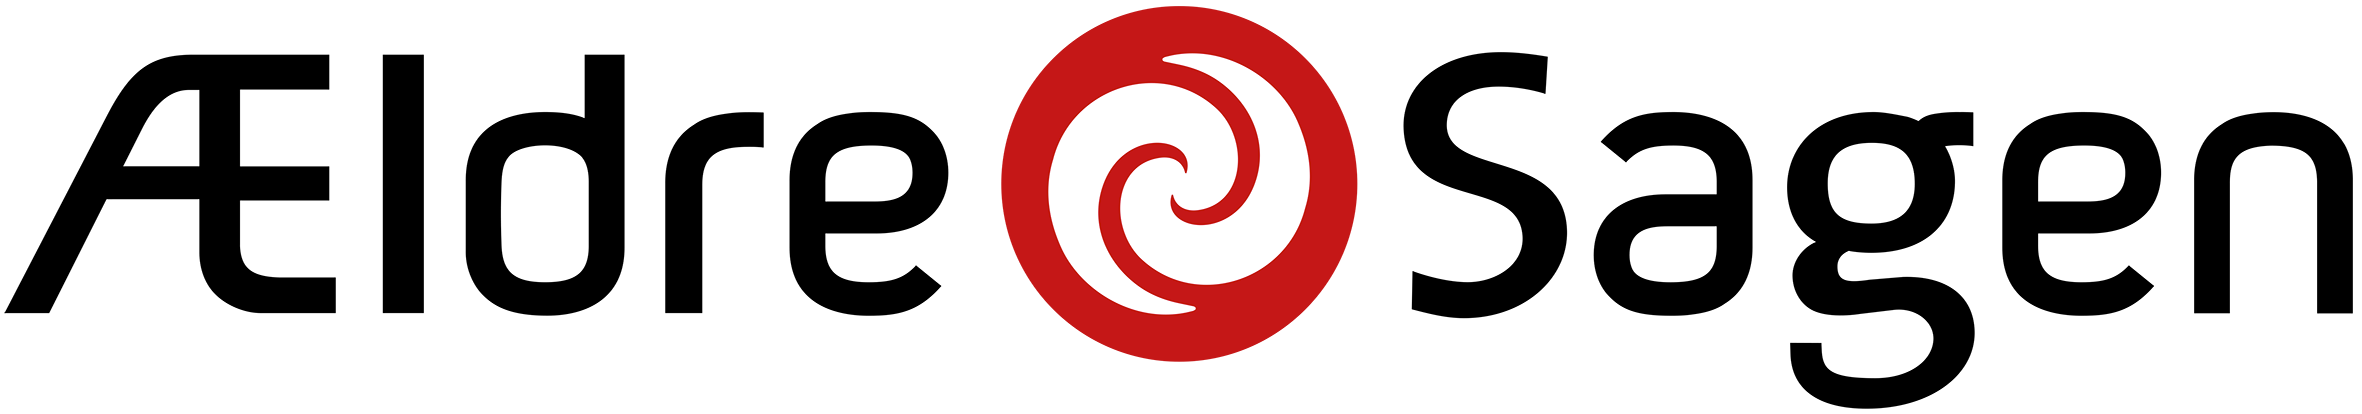 Billedet forestiller logoet for ÆldreSagen.